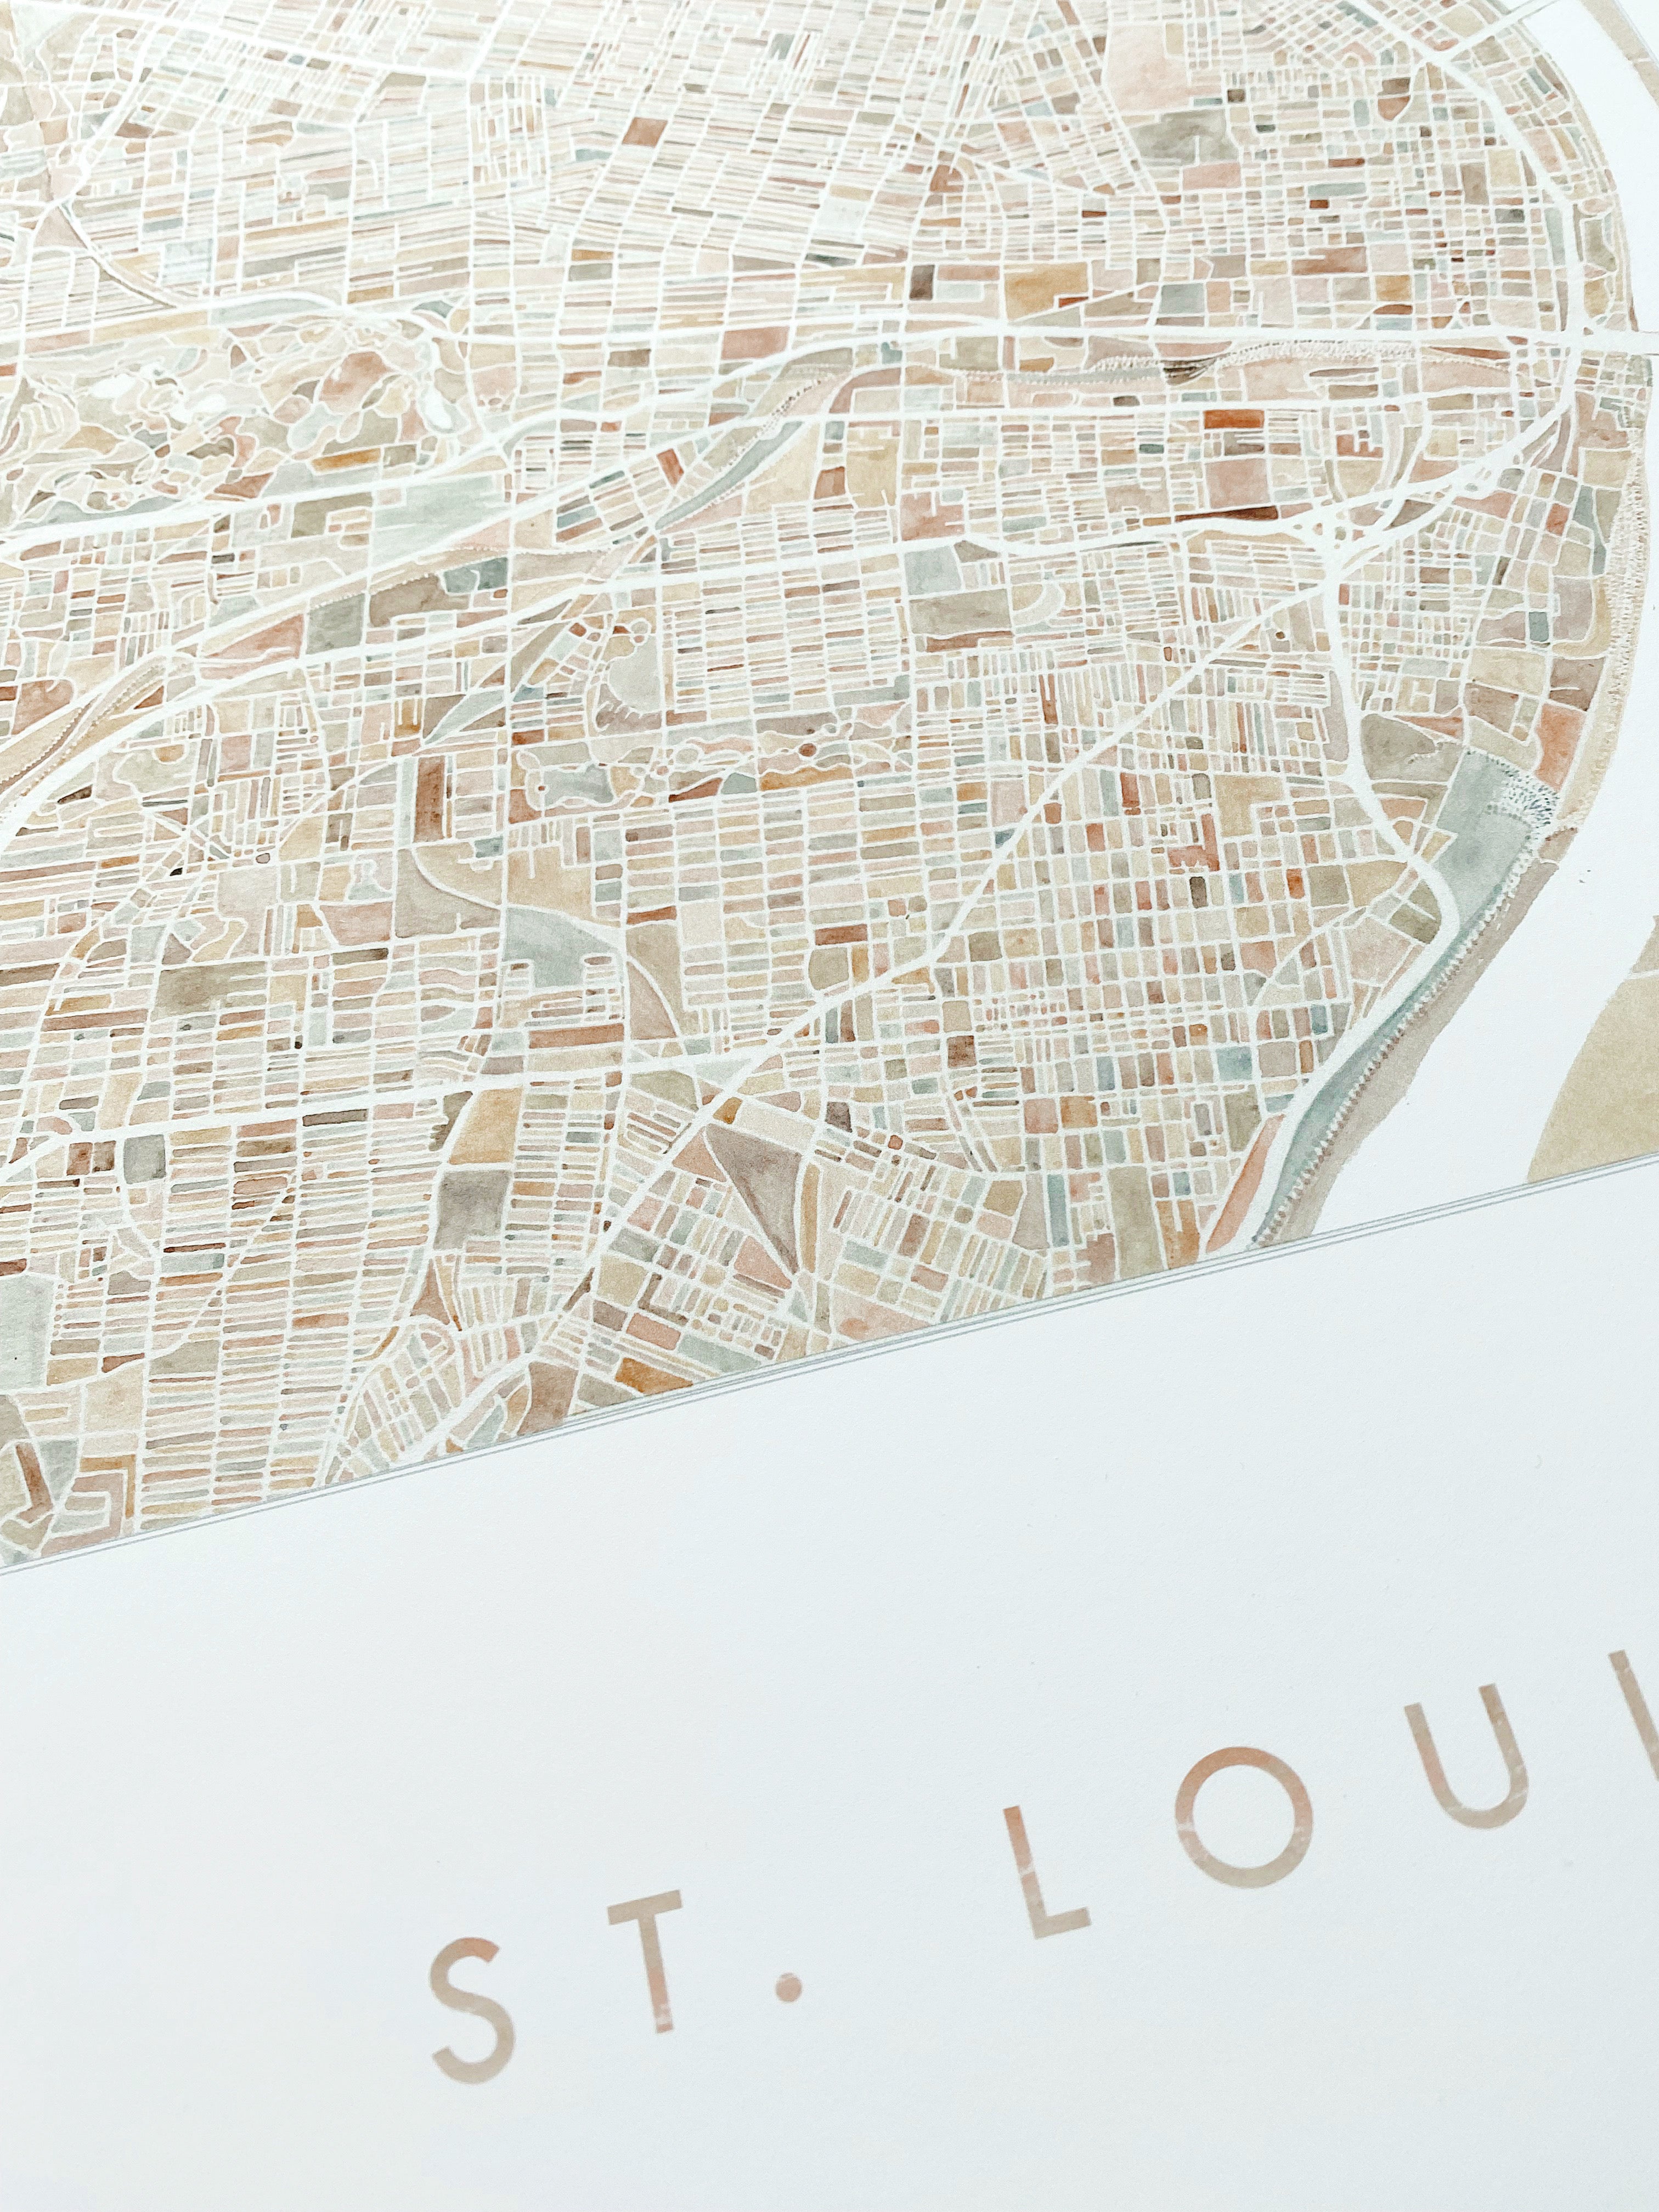 ST. LOUIS Watercolor City Blocks Map: PRINT